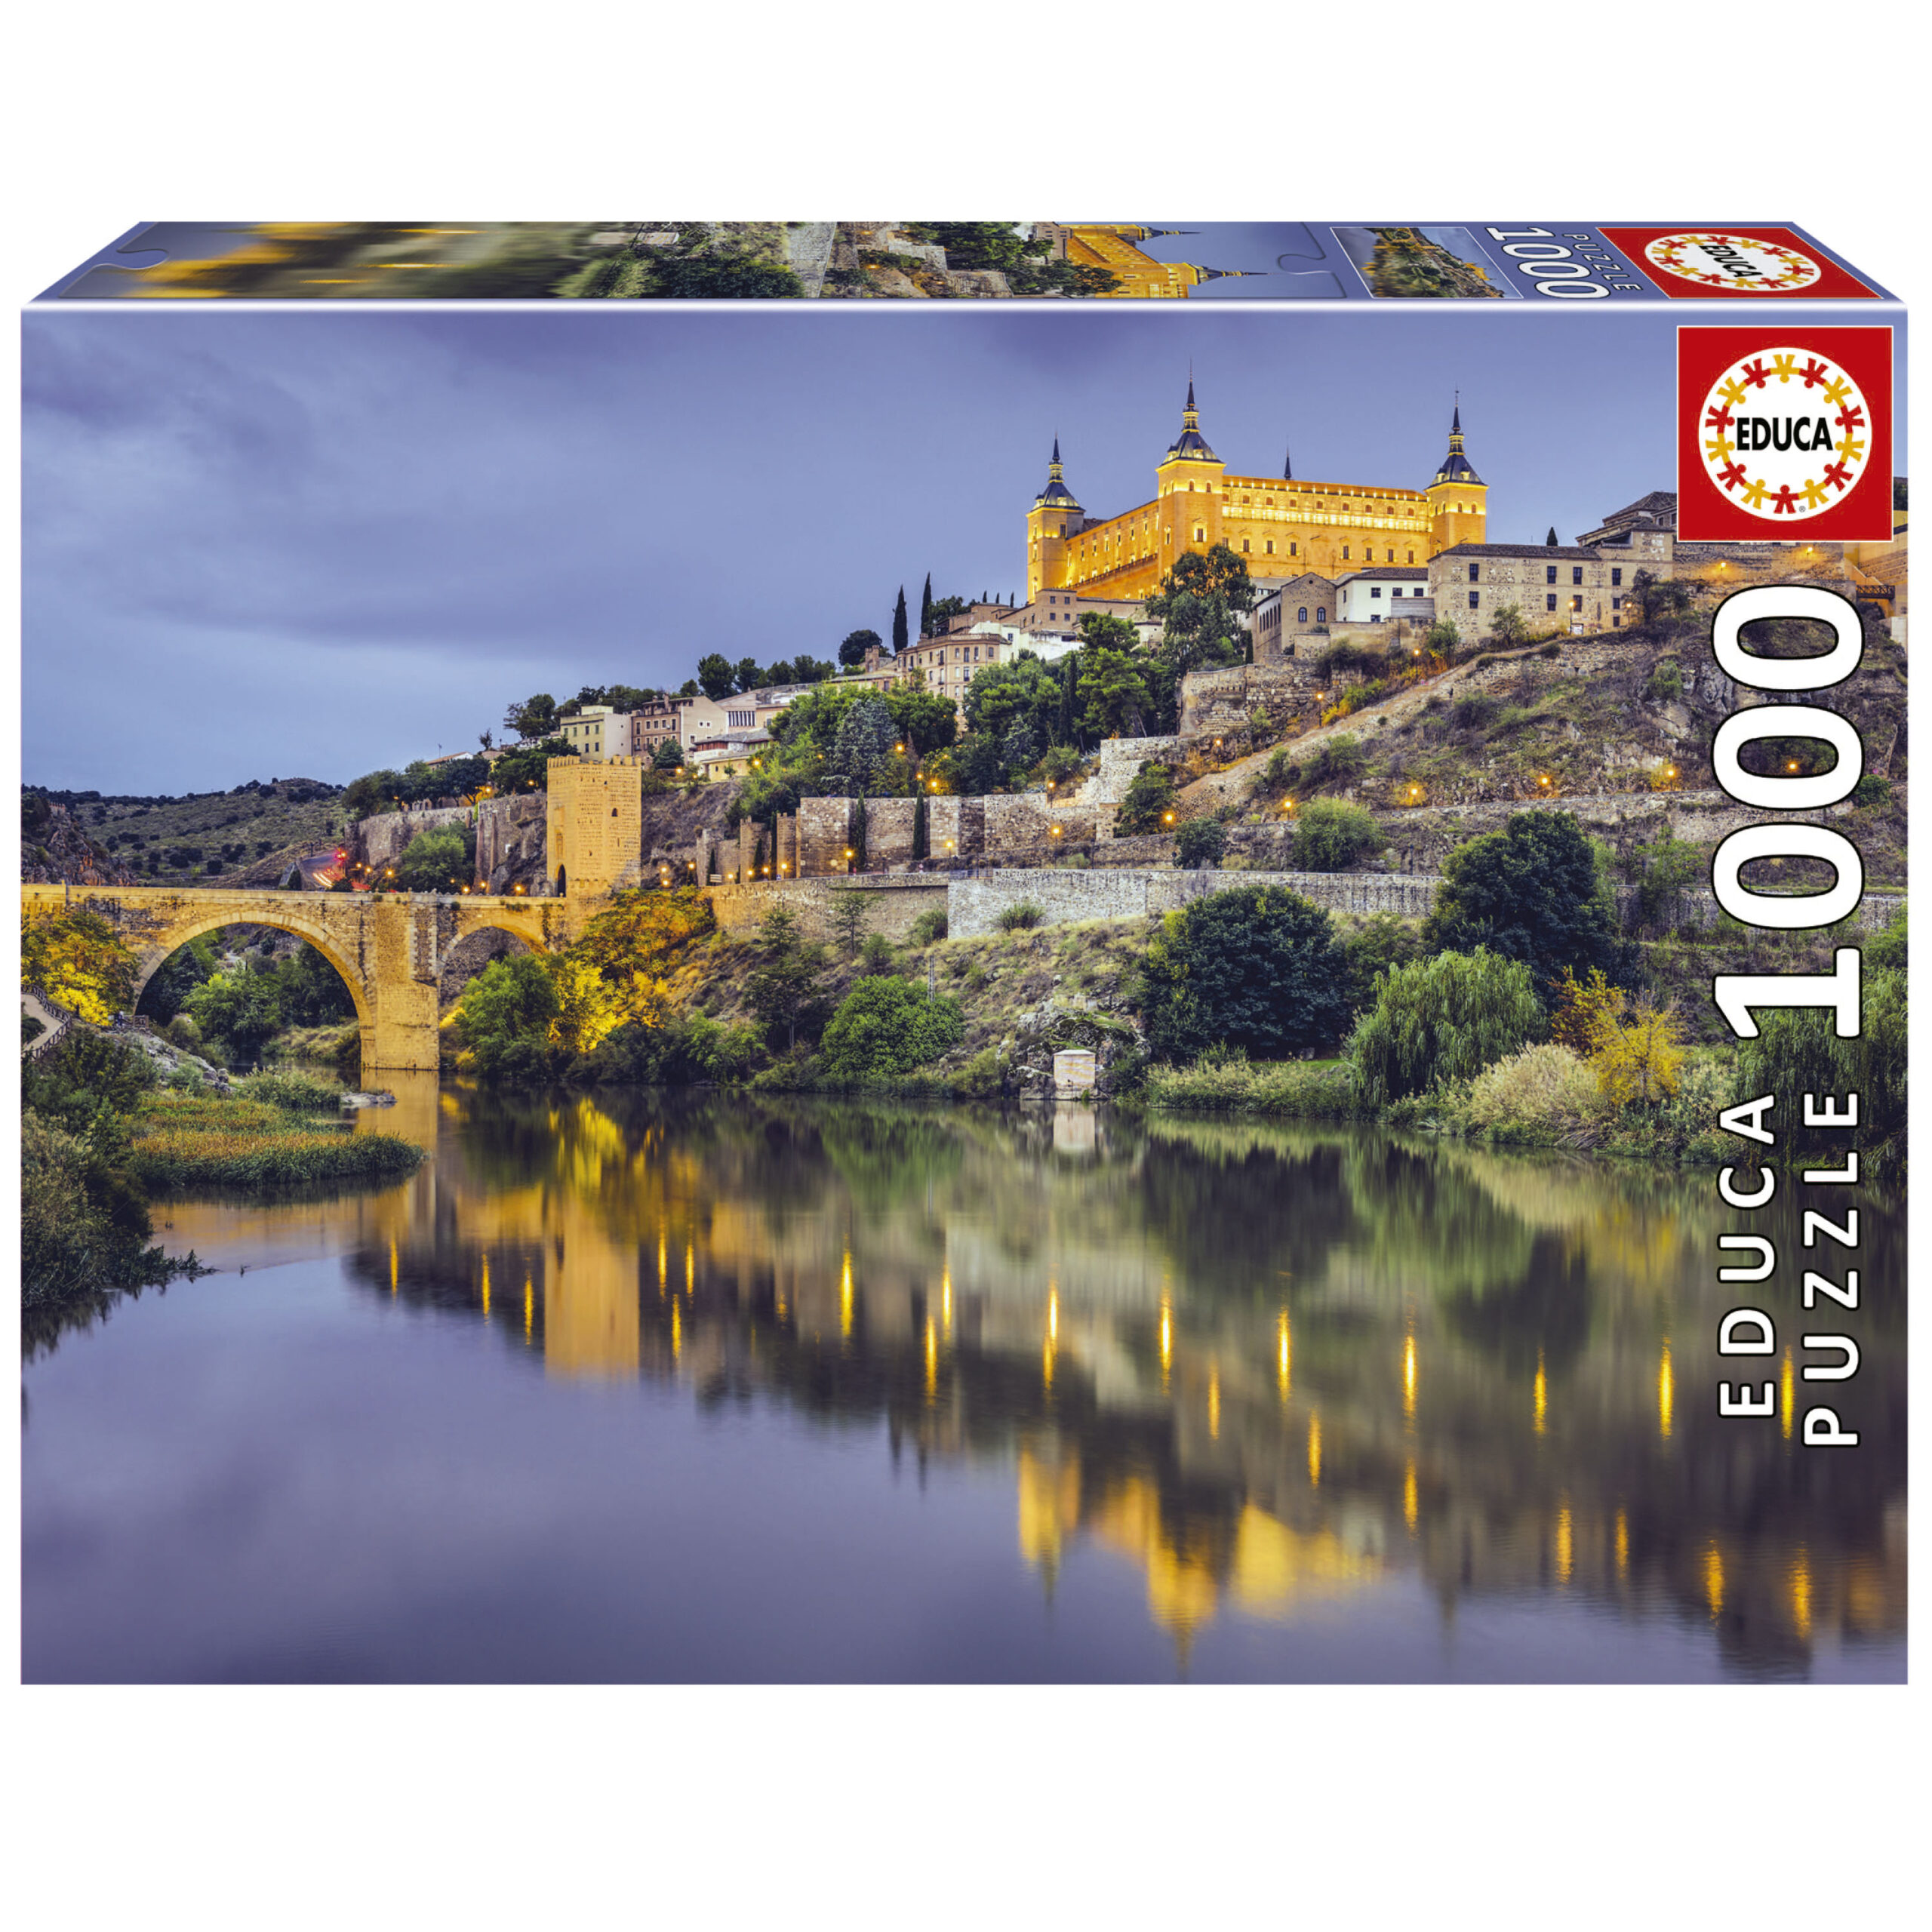 Educa Puzzle 1000 Pcs Machu Picchu Peru 13764 for sale online